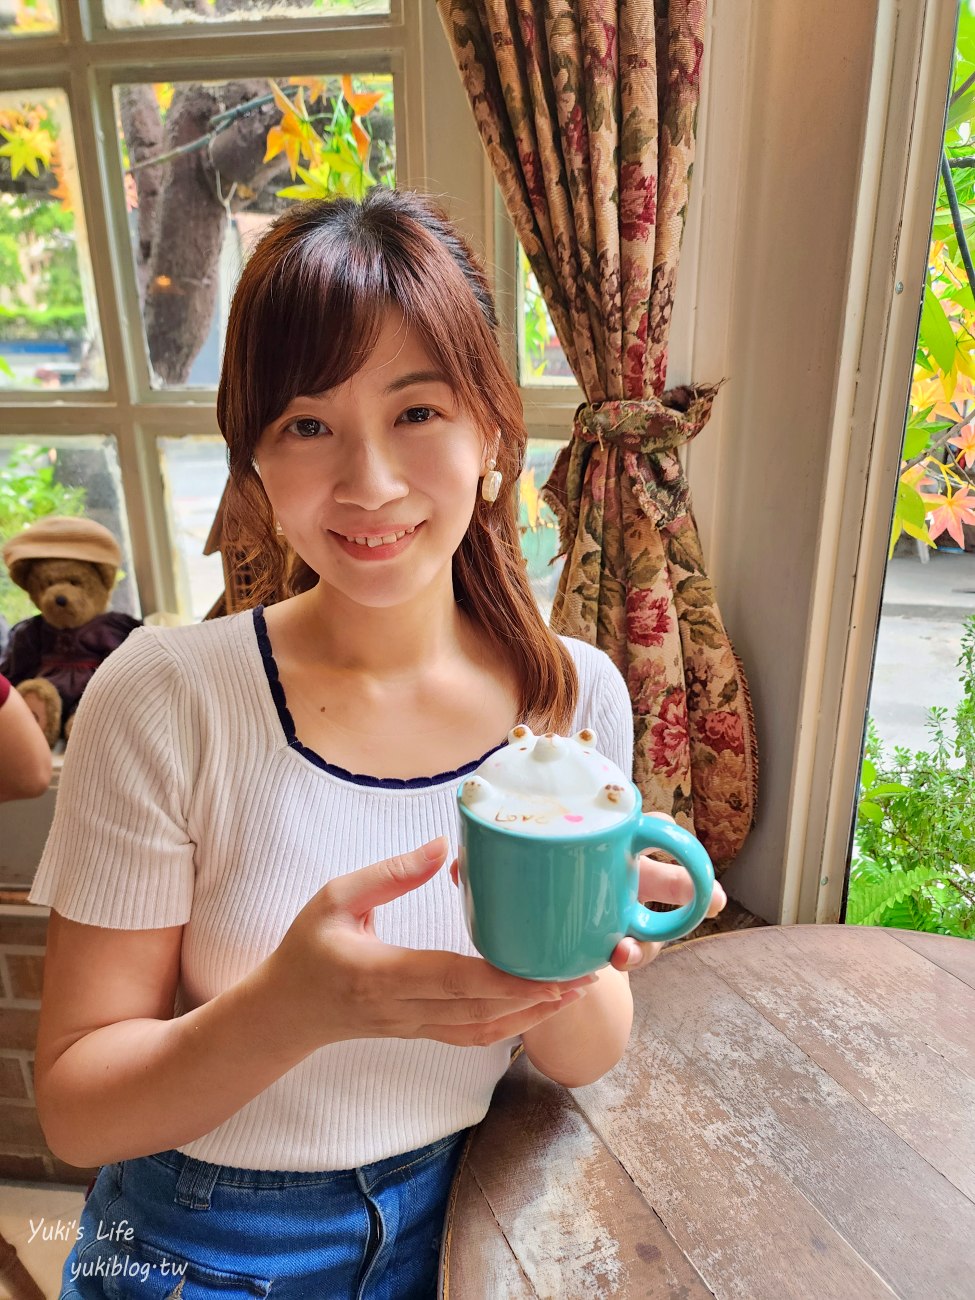 泰國曼谷網美咖啡廳》B-STORY Cafe 鄉村風格~熊熊立體奶泡咖啡~水果茶也可以！ - yukiblog.tw